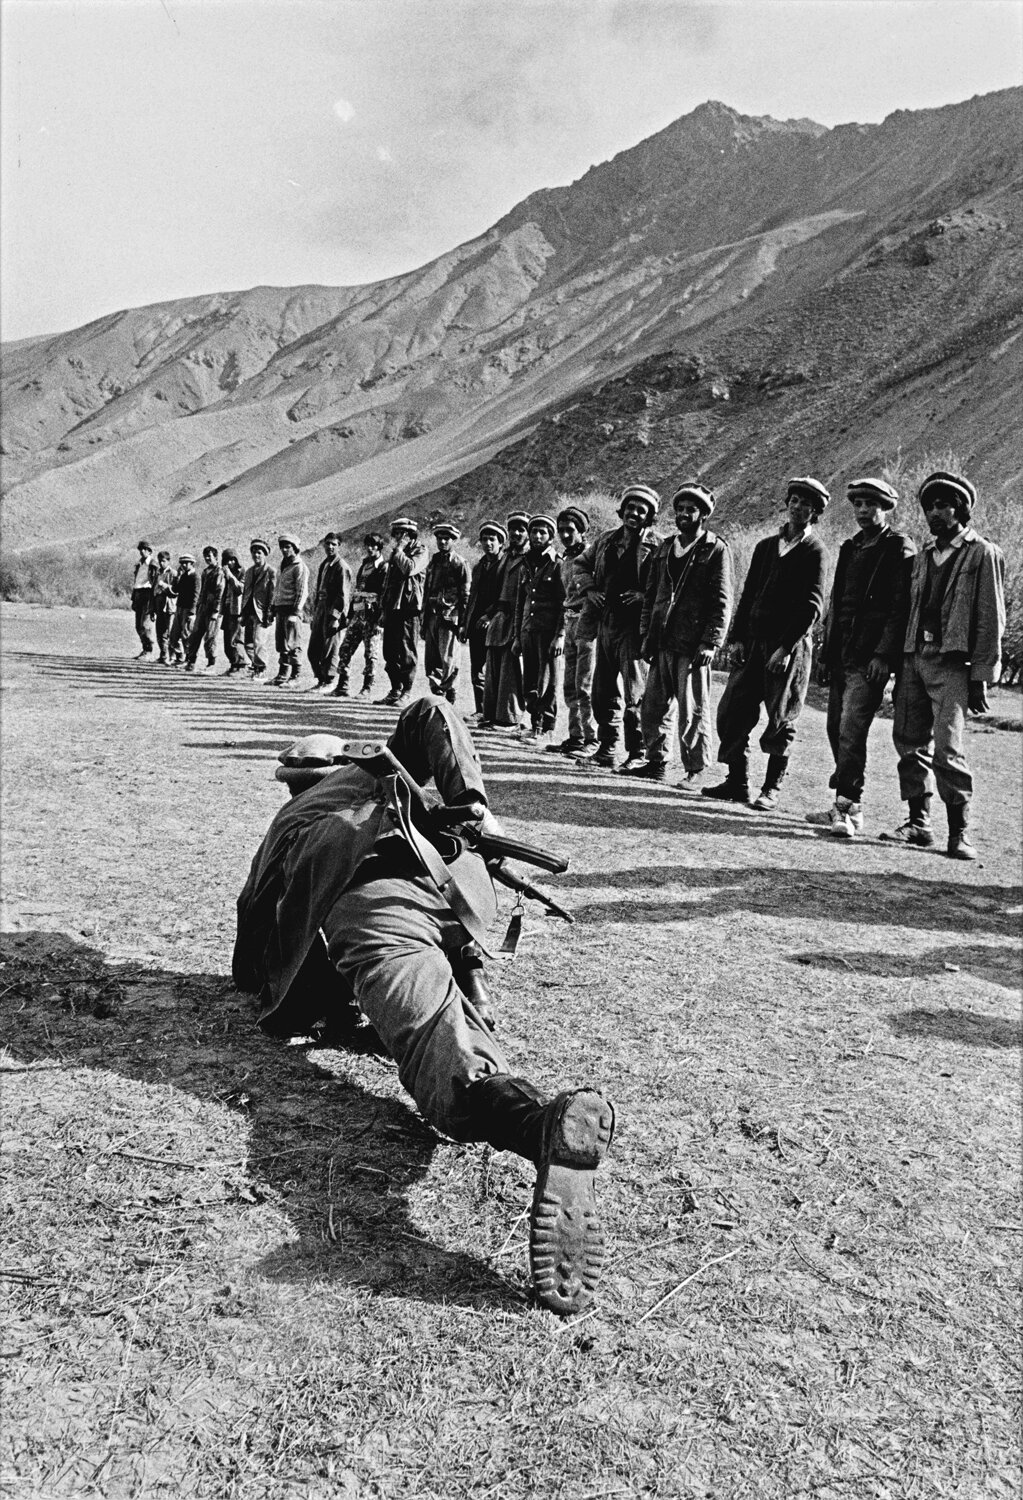 Odd Uhrbom: Afghanistan (1983)